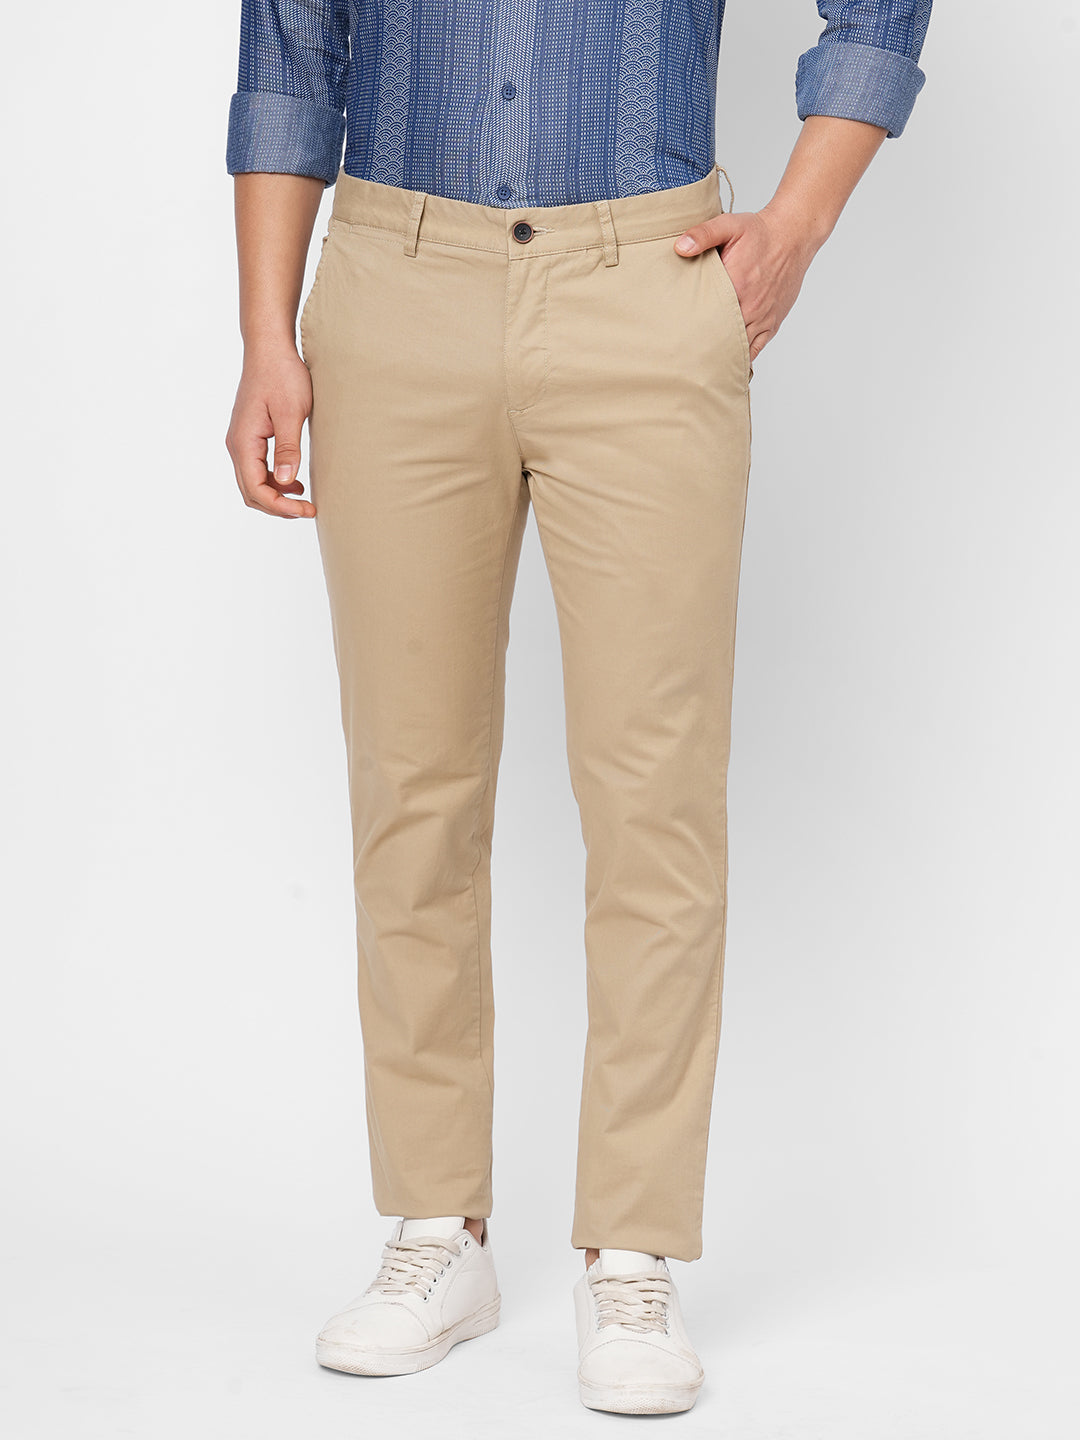 Men's Cotton Lycra Khaki Slim Fit Pant